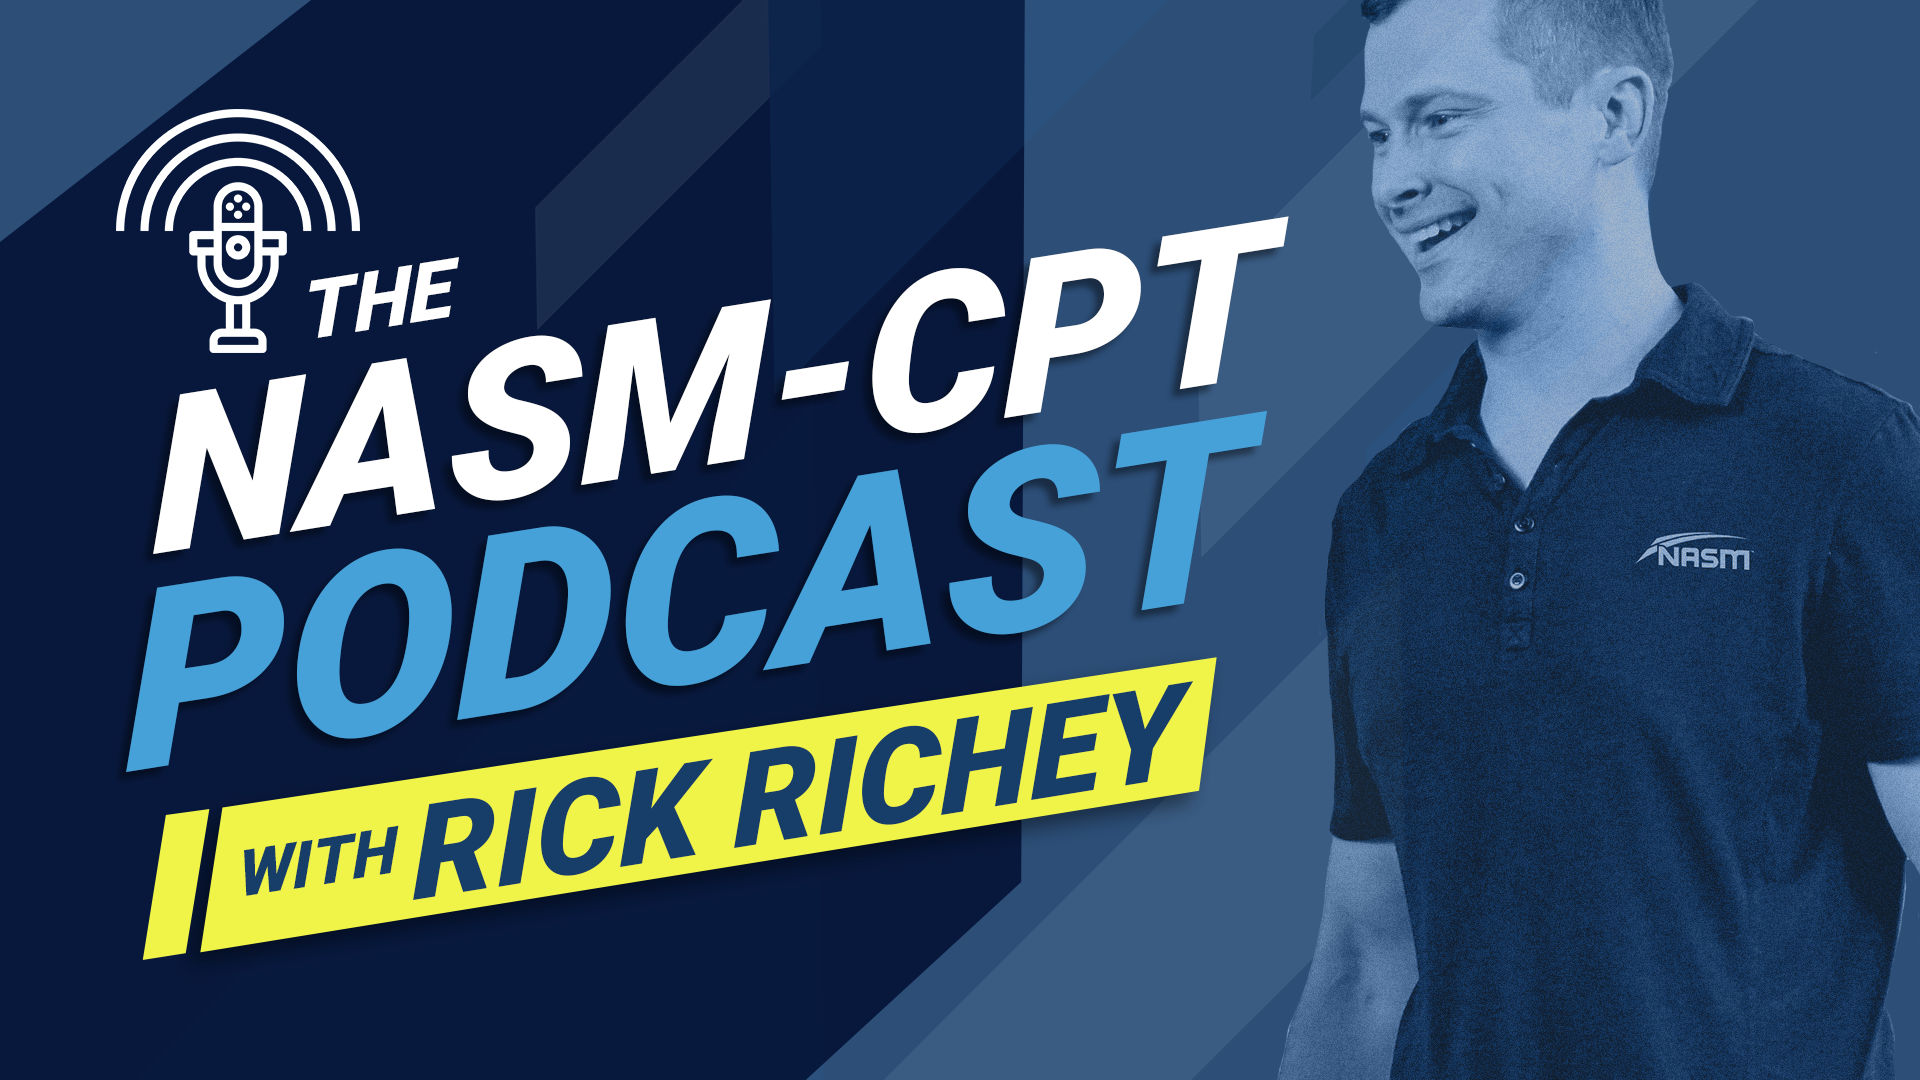 NASM-CPT Podcast logo